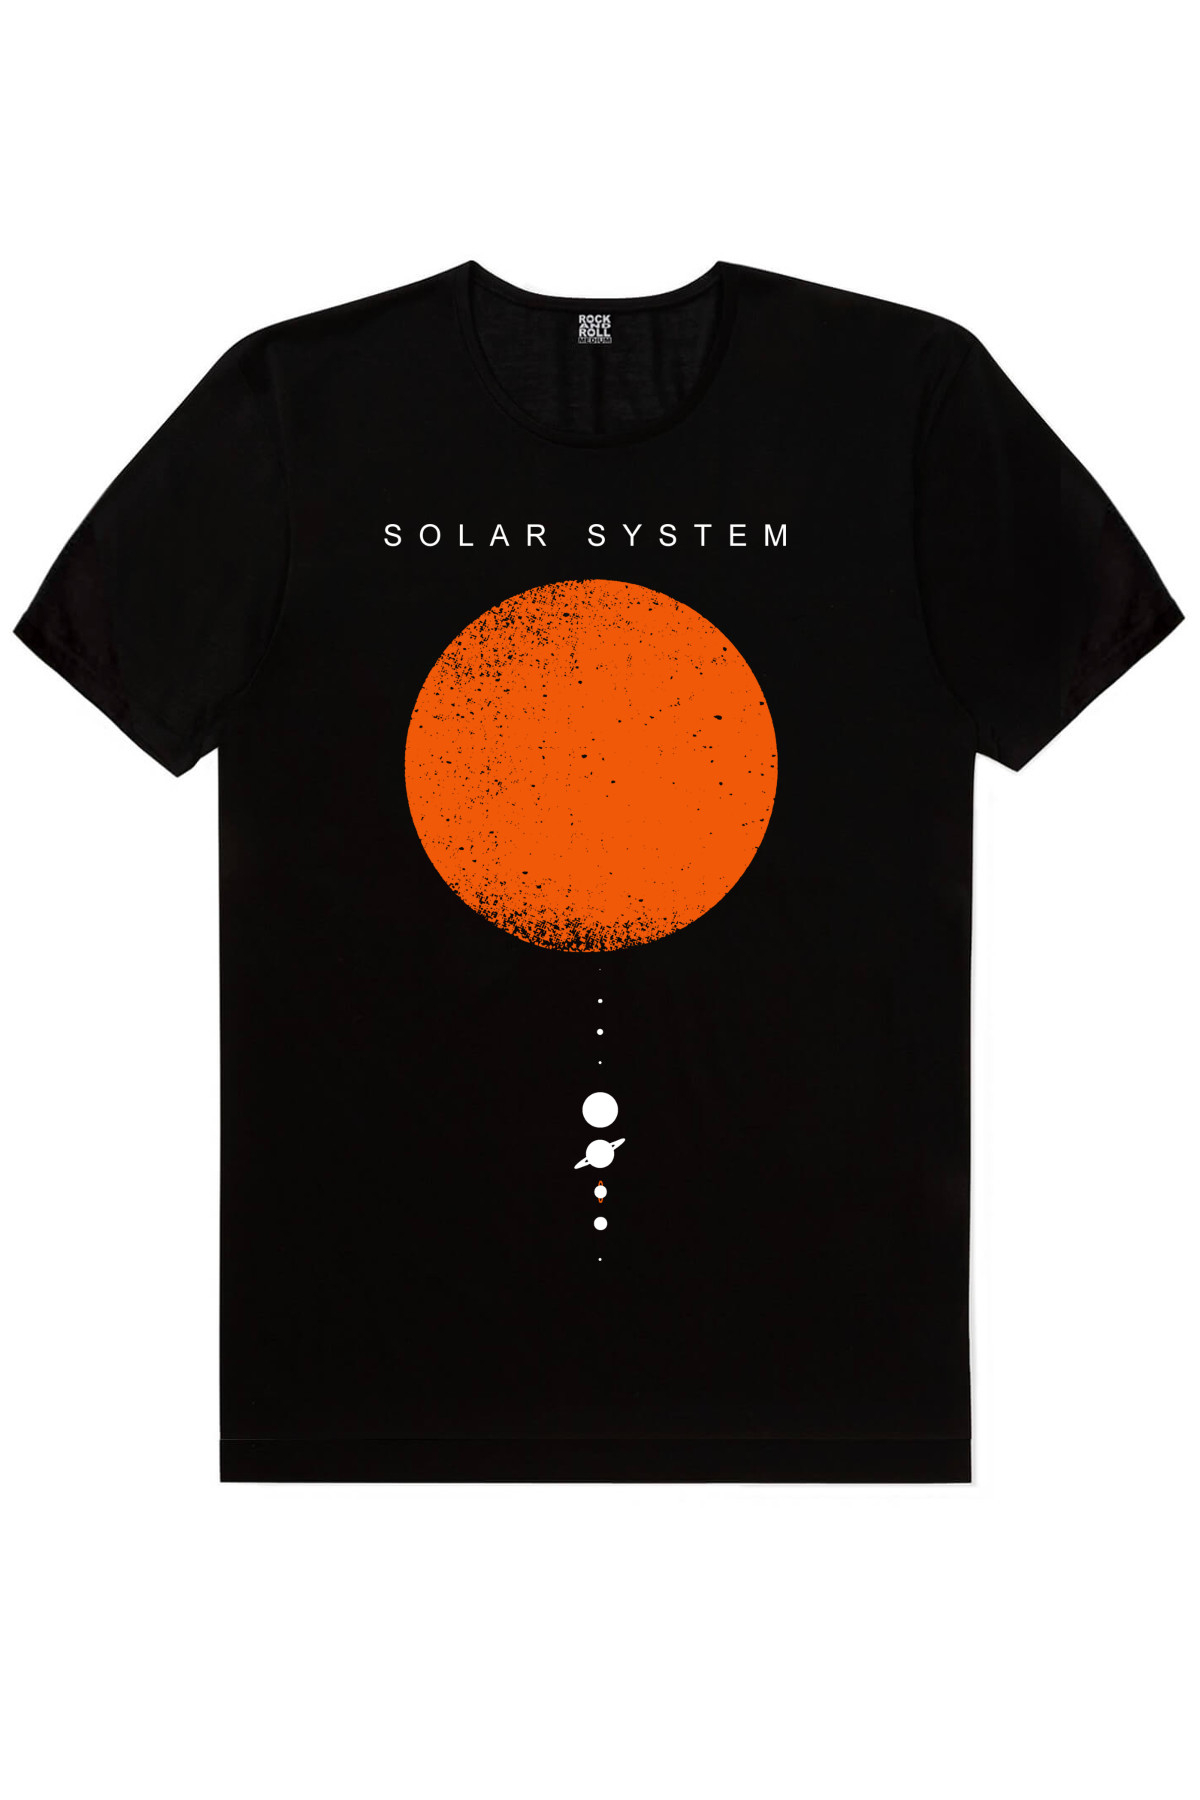 Güneş Sistemi, Biz Ayrılamayız Kadın 2'li Eko Paket T-shirt